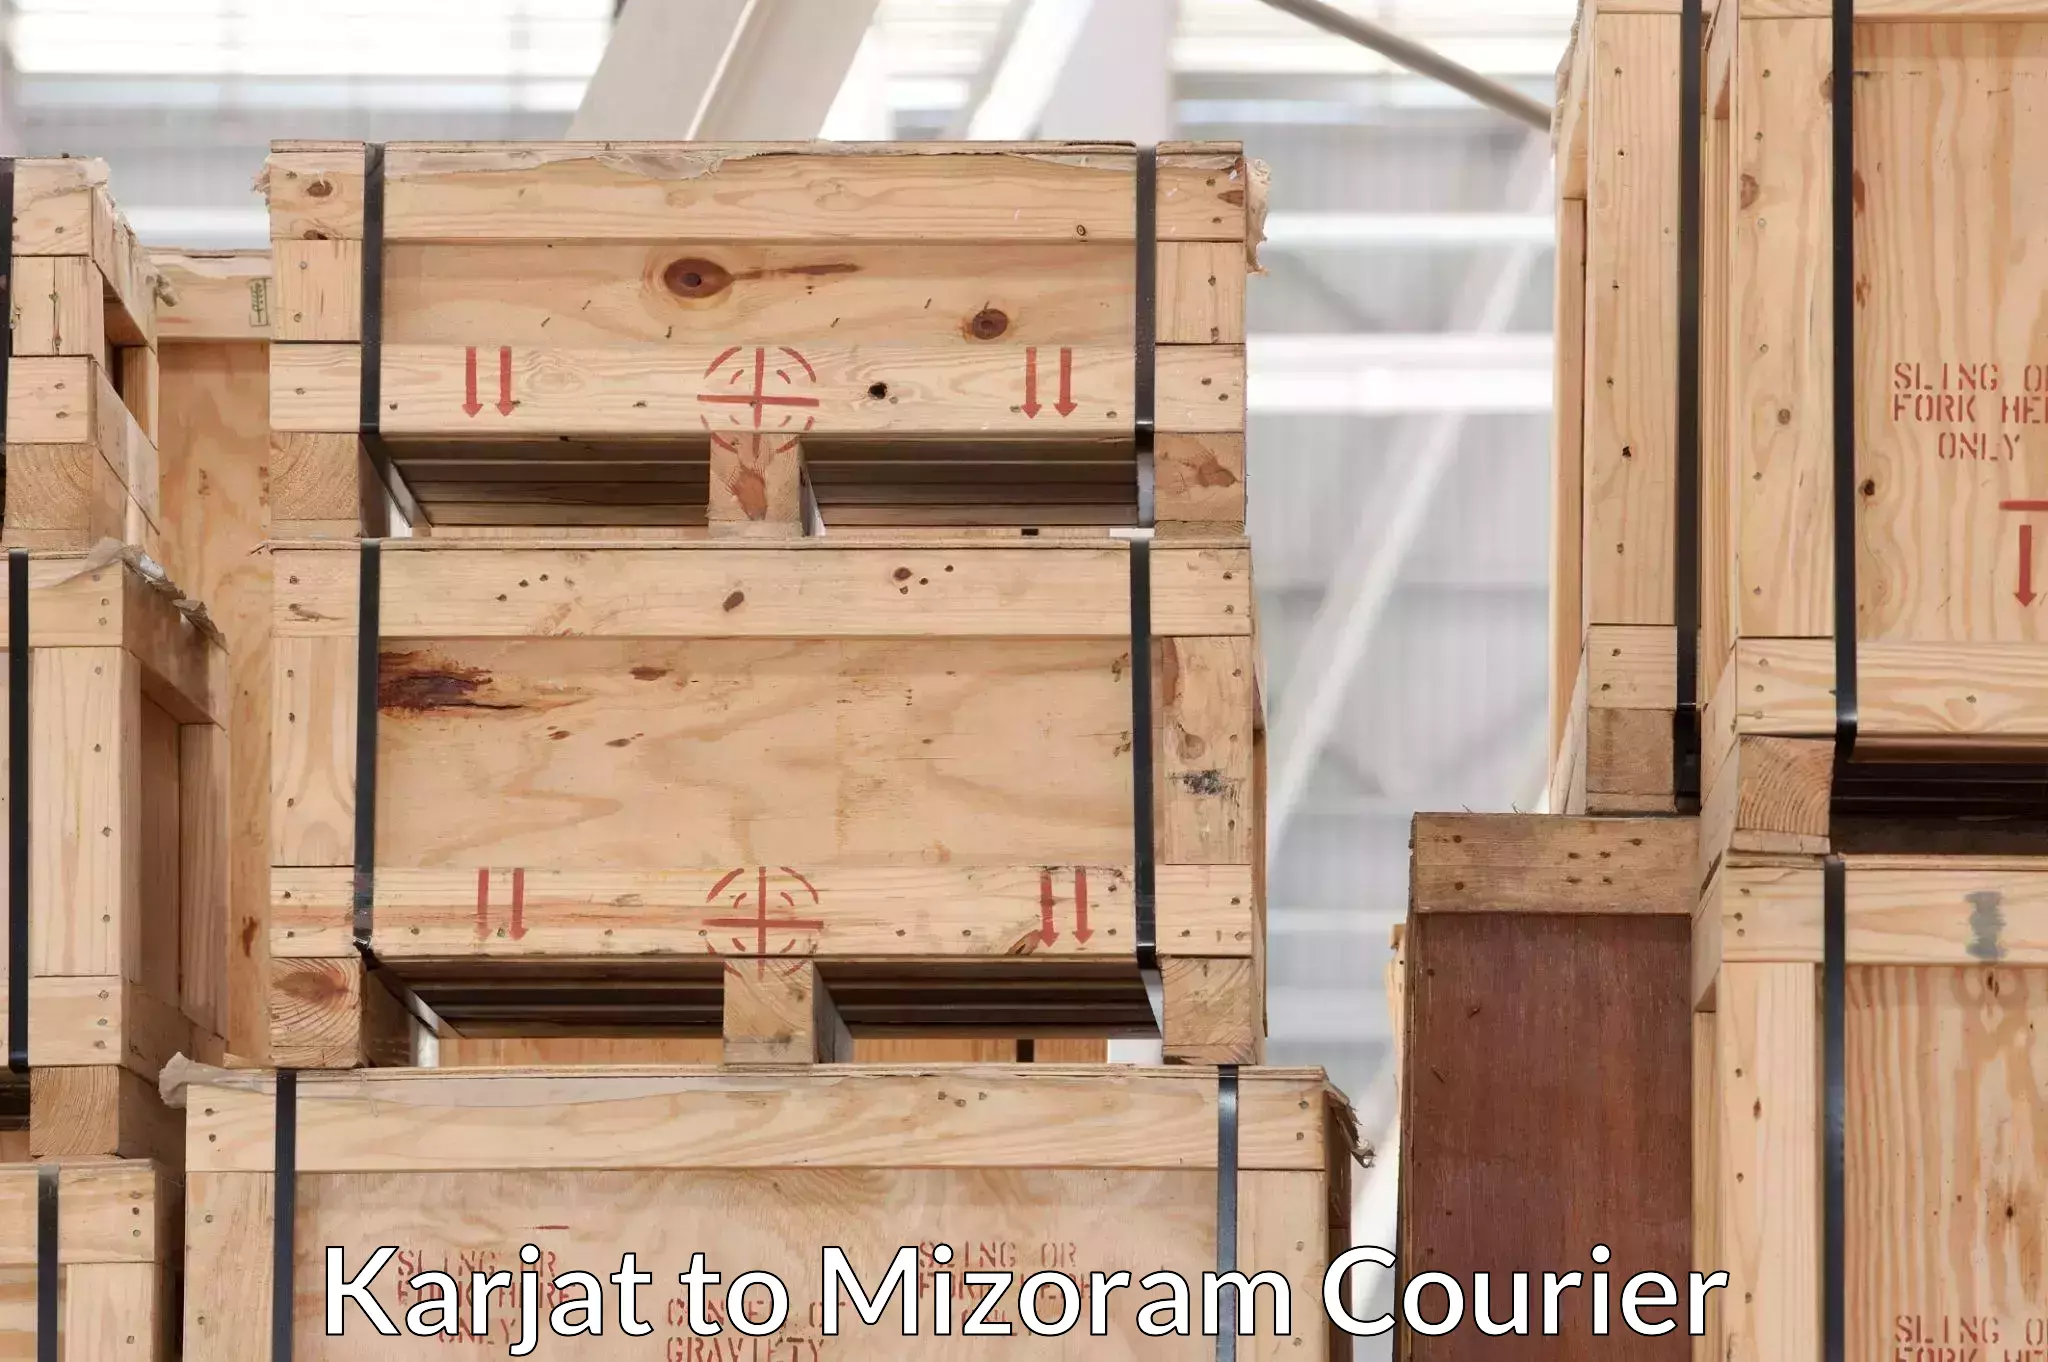 Specialized moving company Karjat to Mizoram